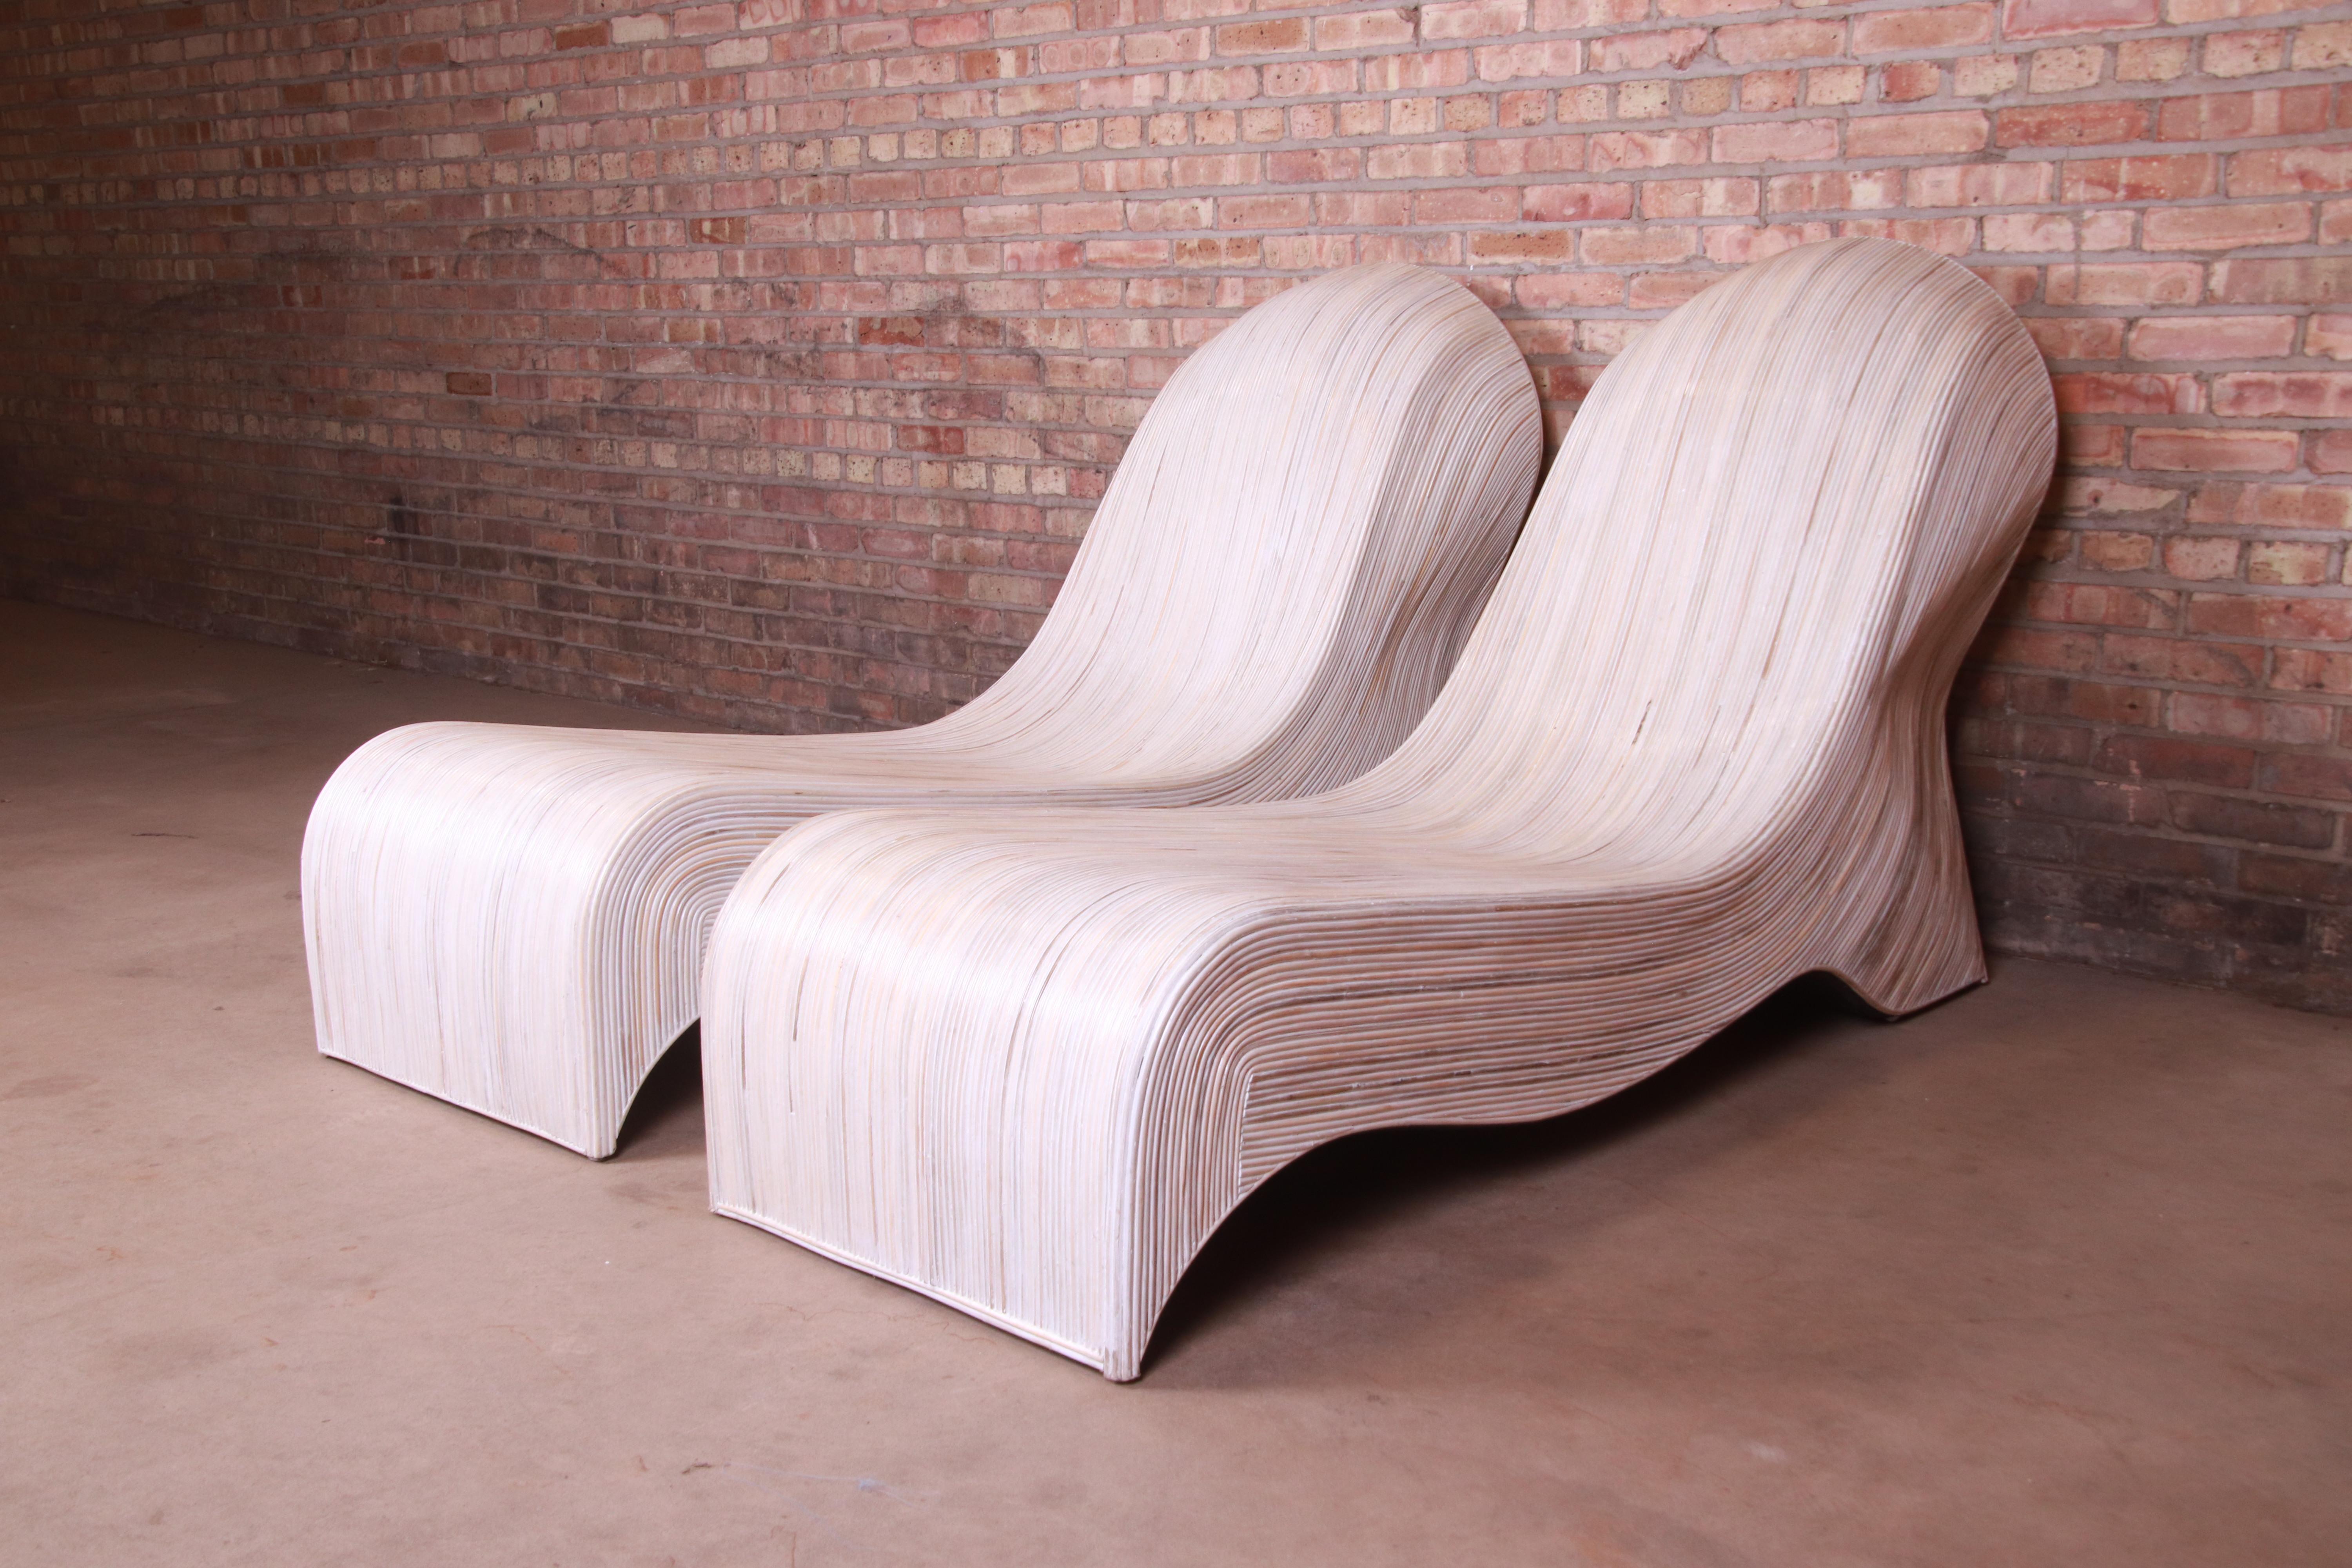 Une magnifique paire de chaises longues en rotin fendu, organiques et modernes

Par Betty Cobonpue

1980s

Mesures : 25.5 